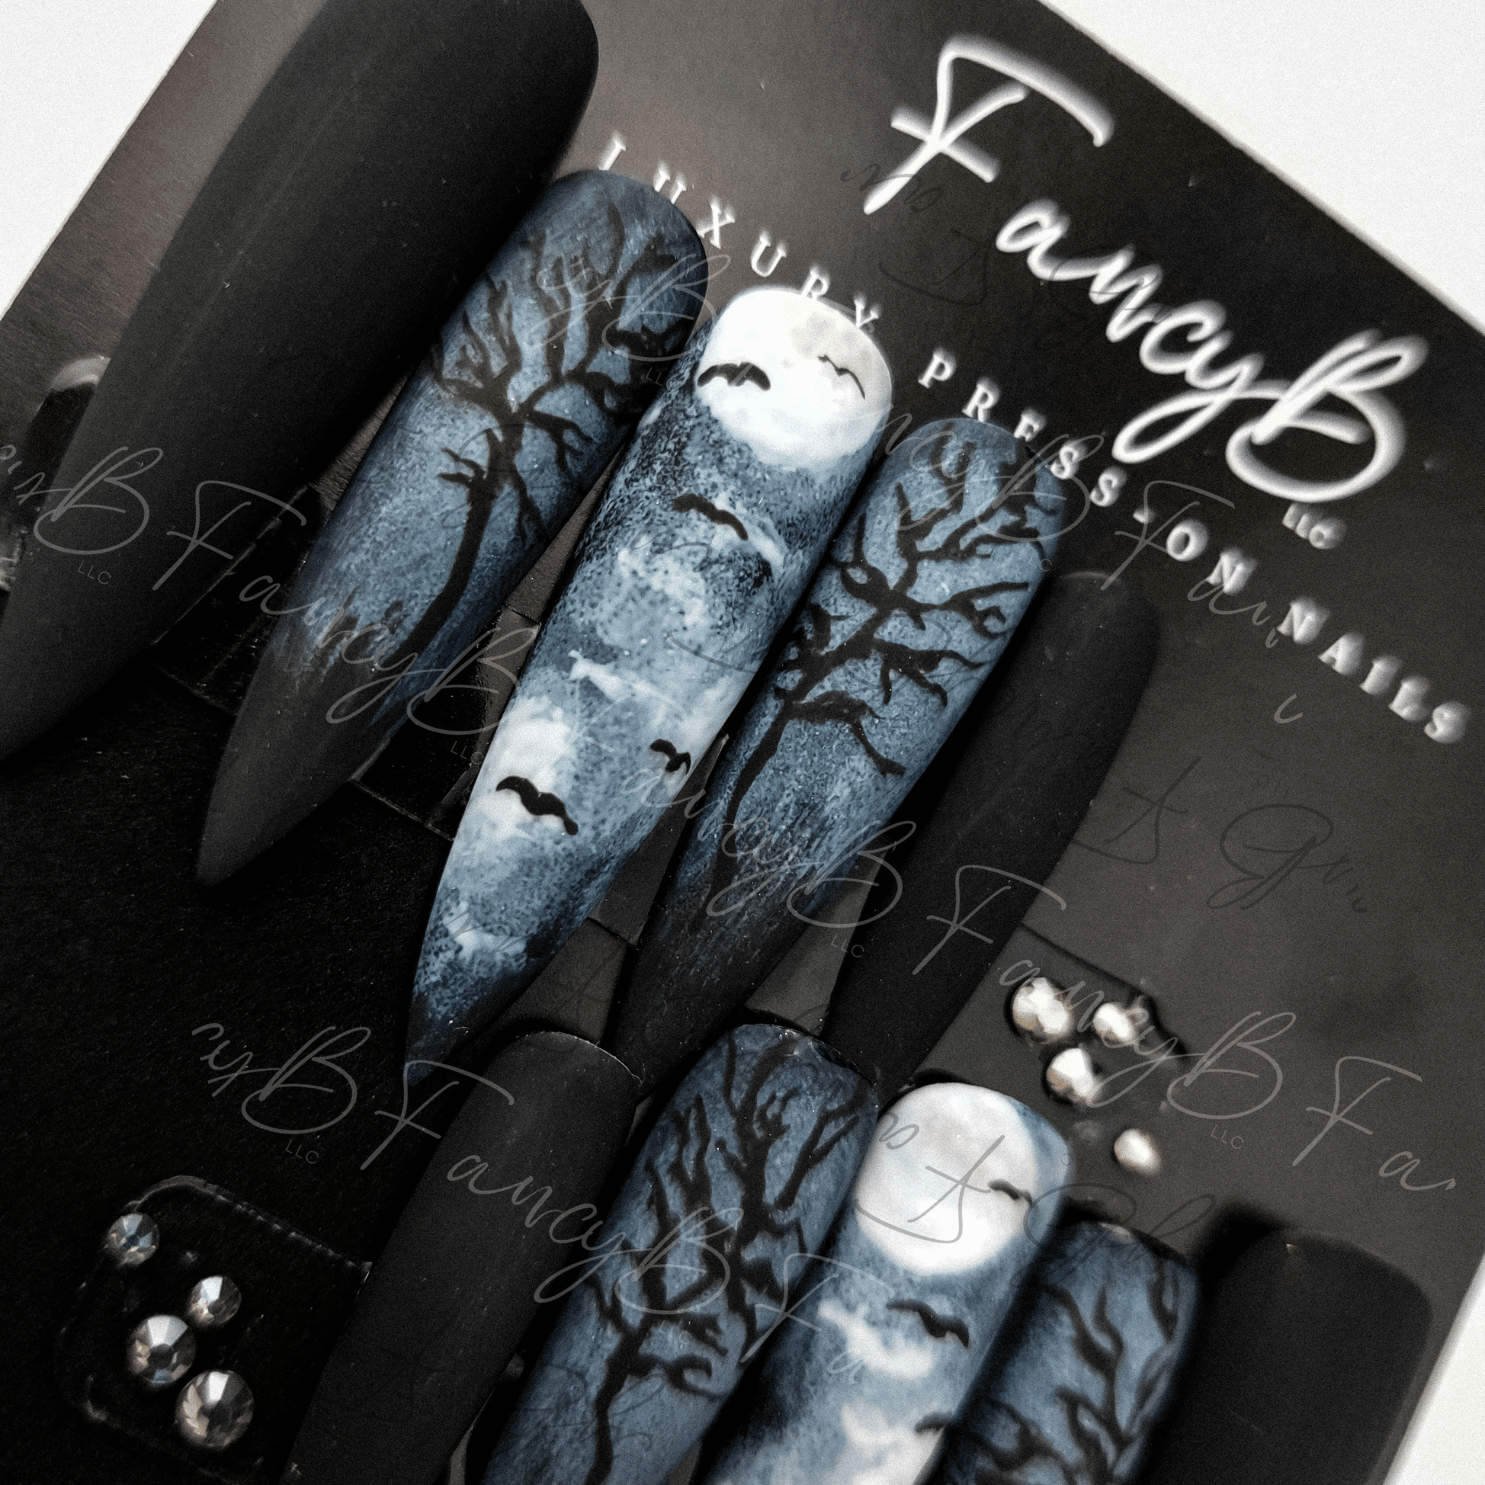 custom halloween press nails with bats, moon, creepy fog and trees. Spooky season nails by FancyB Nails.